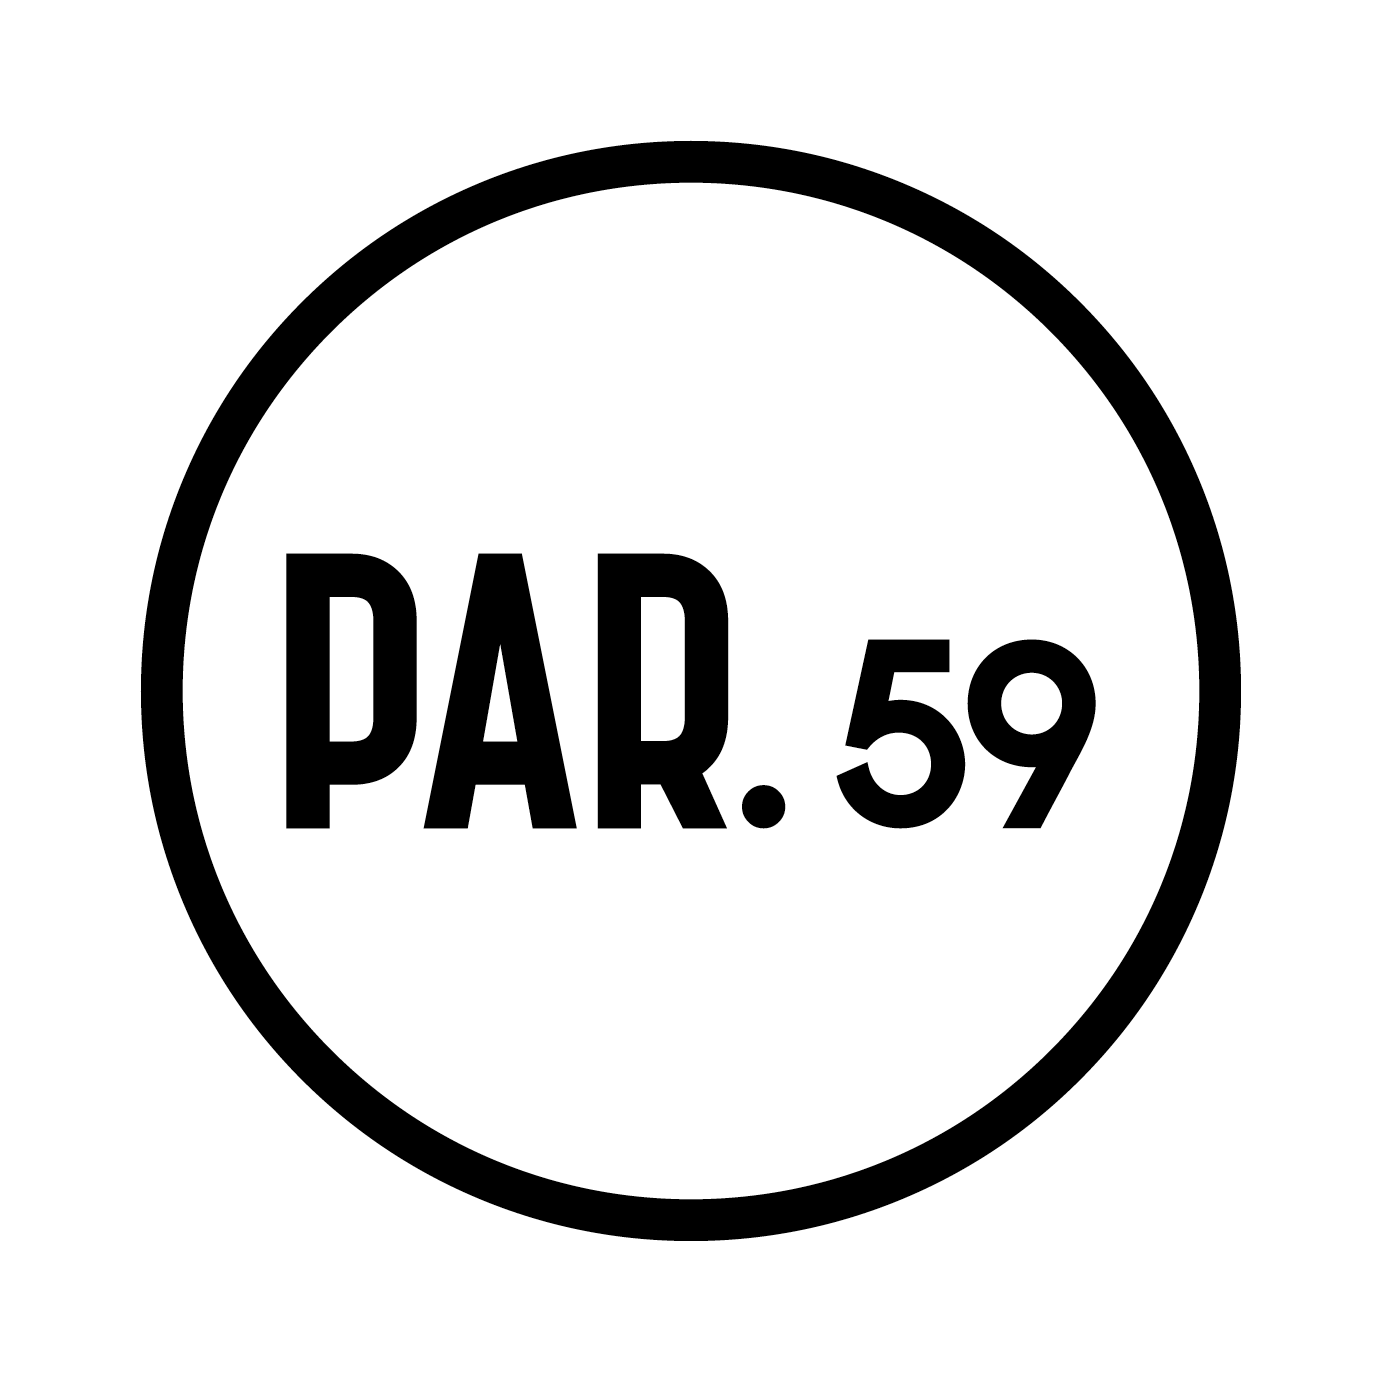 Een zwart-wit logo met het nummer 59 in een cirkel.